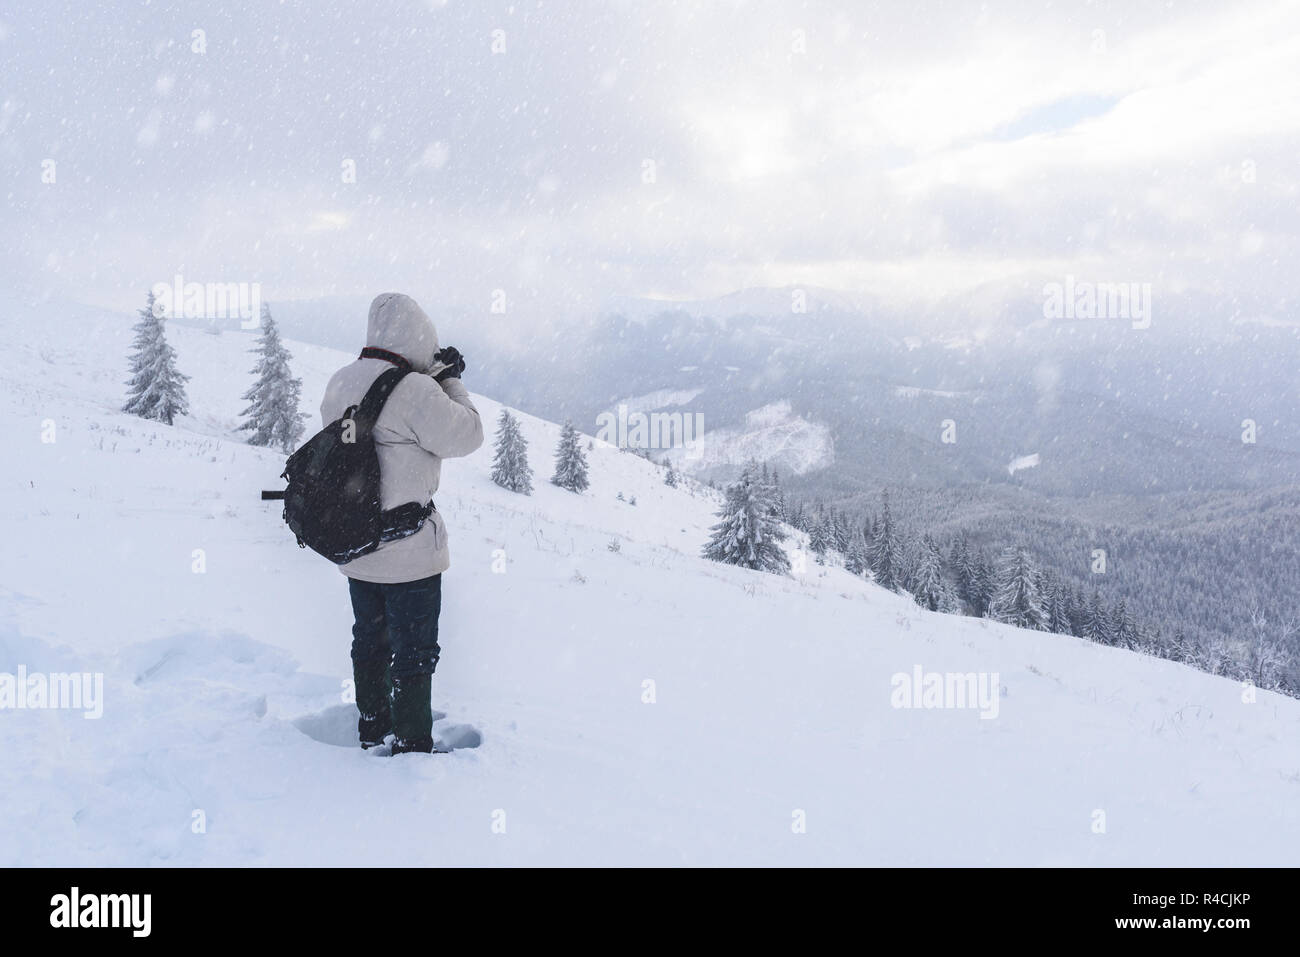 Allein Fotograf am Berg im Schneesturm mit einem Rucksack im Winter. Travel Concept. Karpaten. Landschaftsfotografie Stockfoto